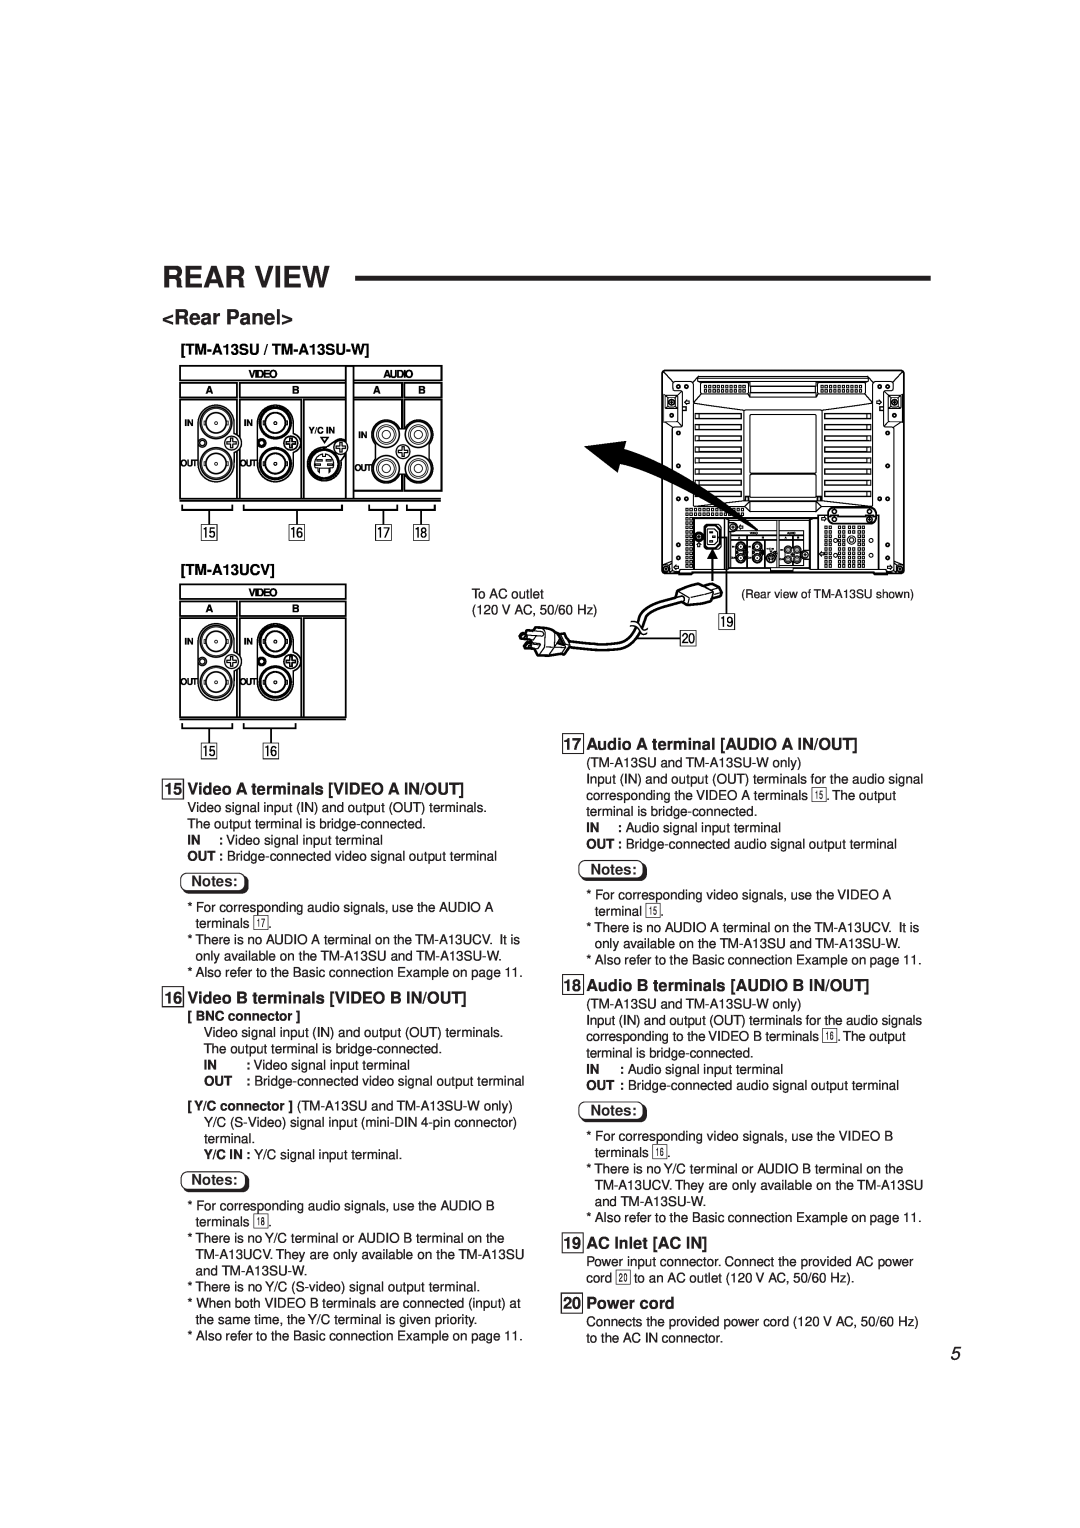 JVC manual Rear View, Rear Panel, TM-A13SU / TM-A13SU-W, TM-A13UCV 